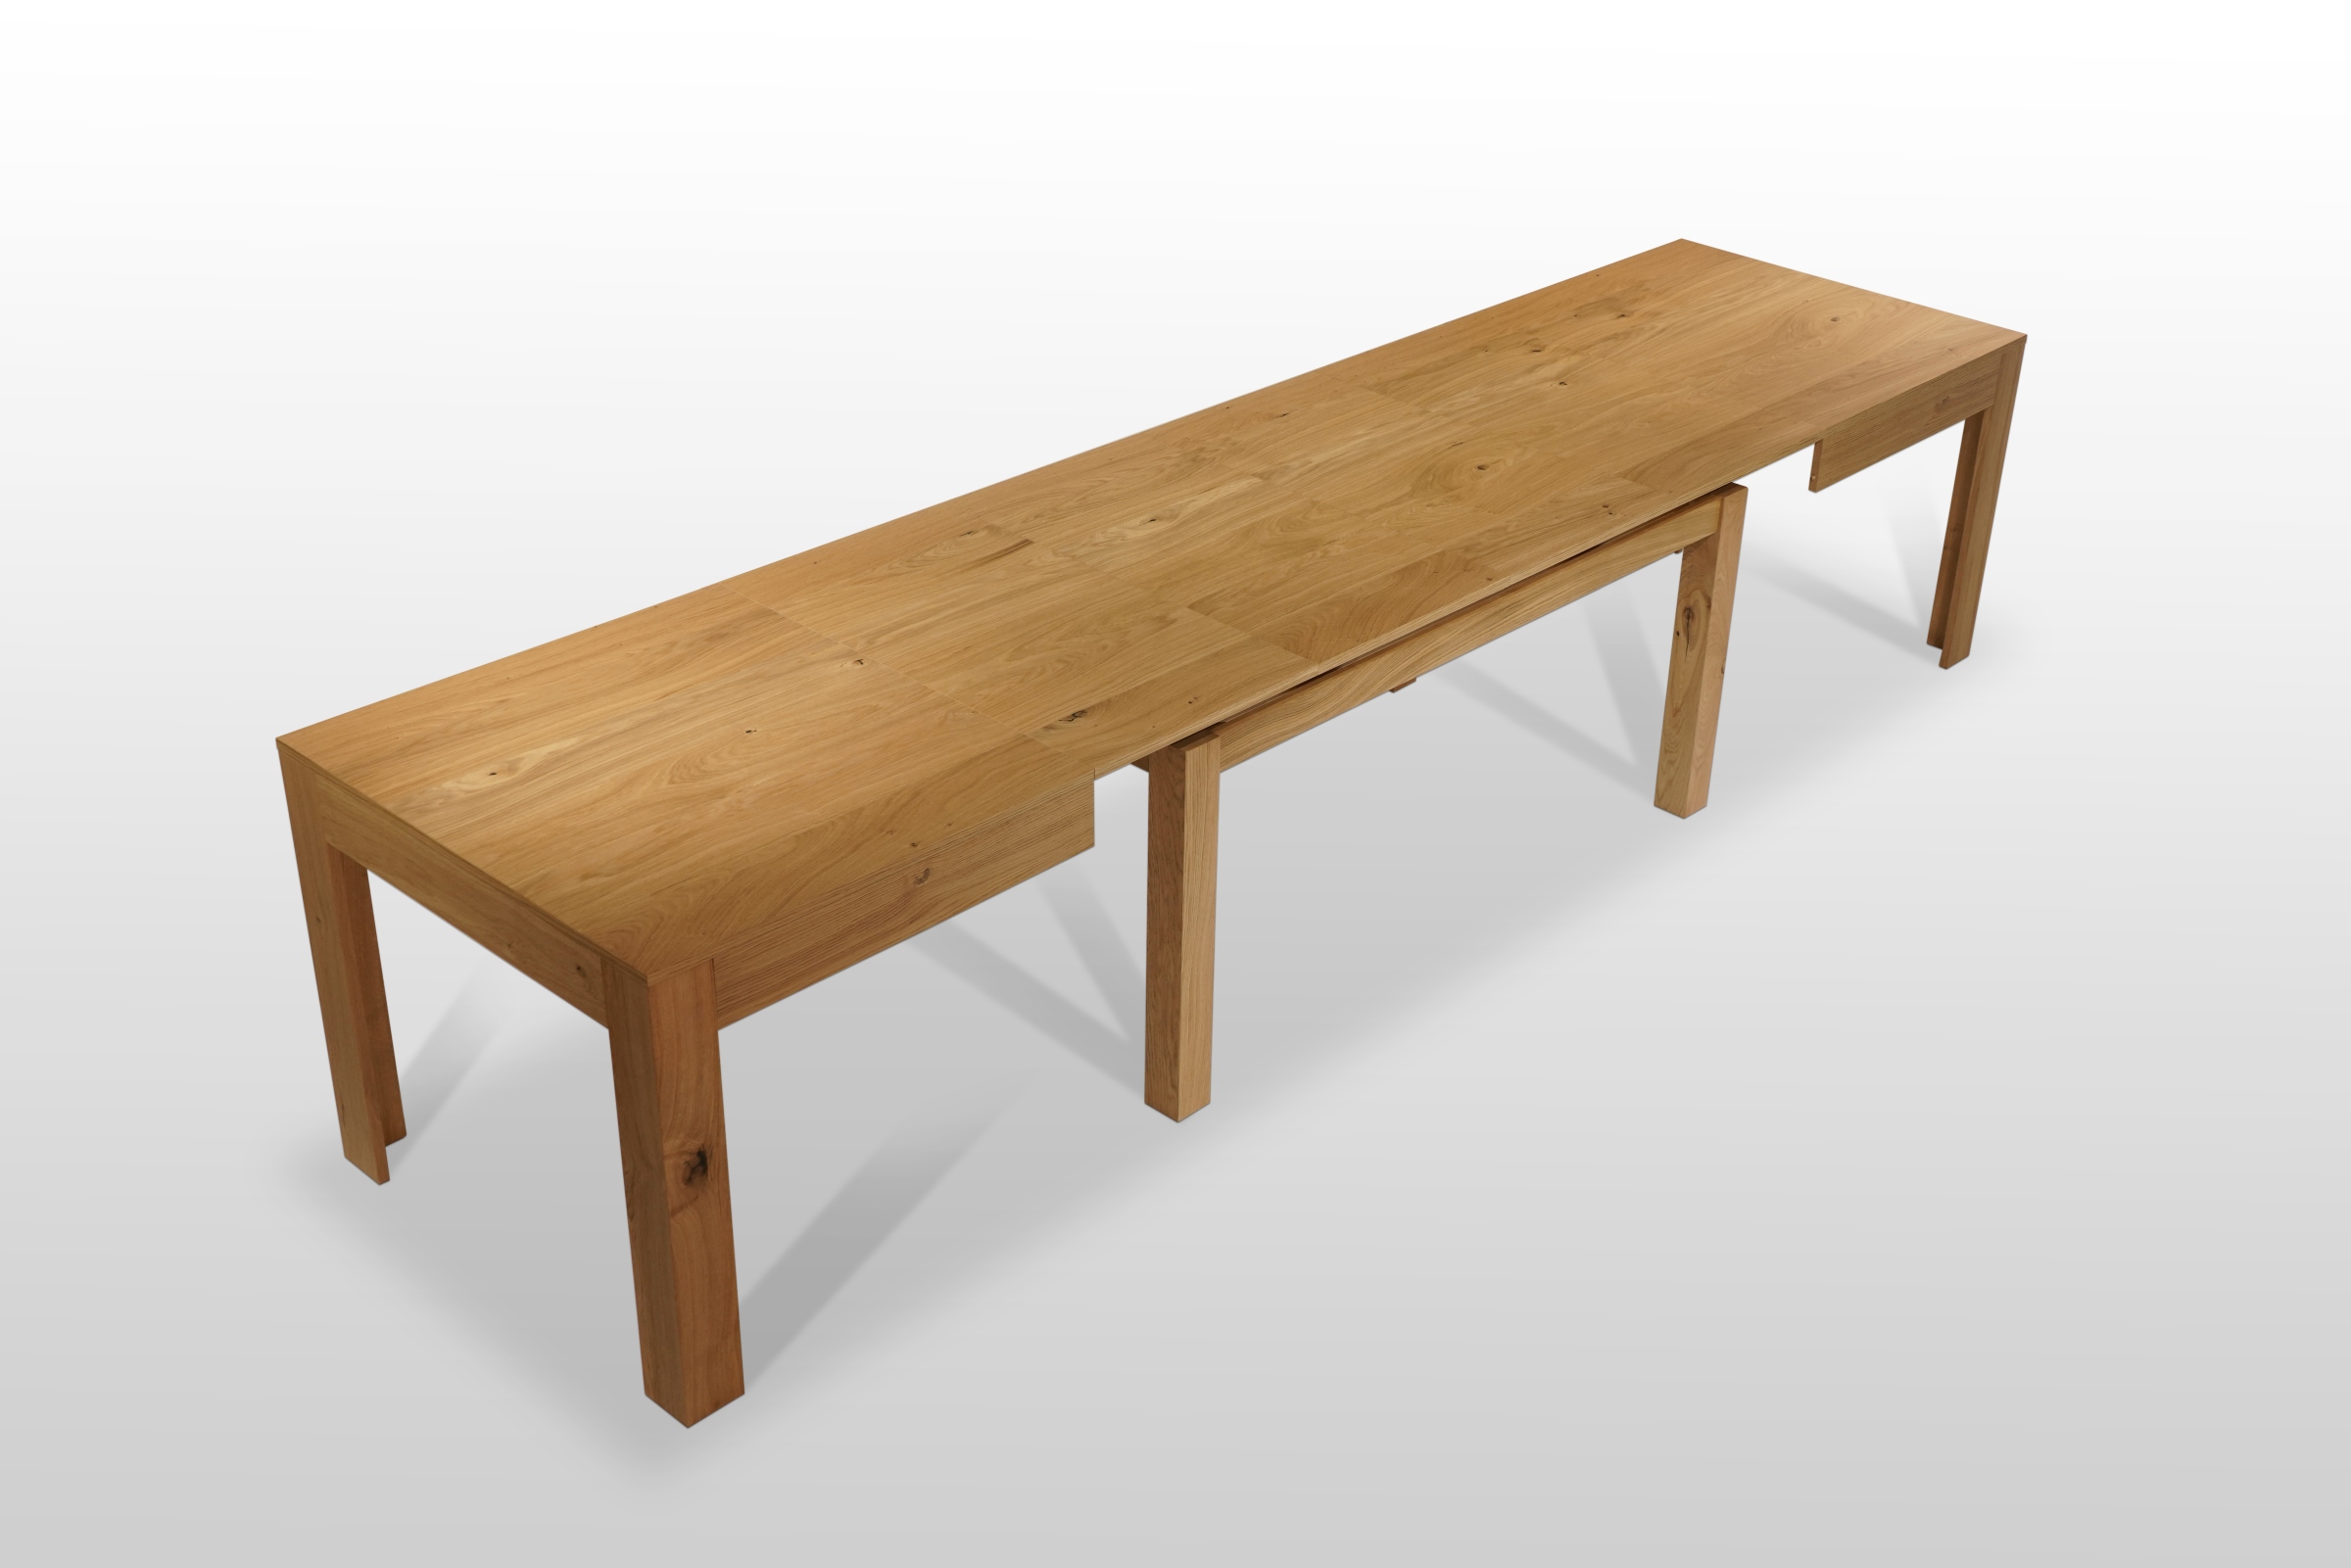 Rozkładany stół na ośmiu nogach jest niezwykle stabilny, estetyczny i praktyczny